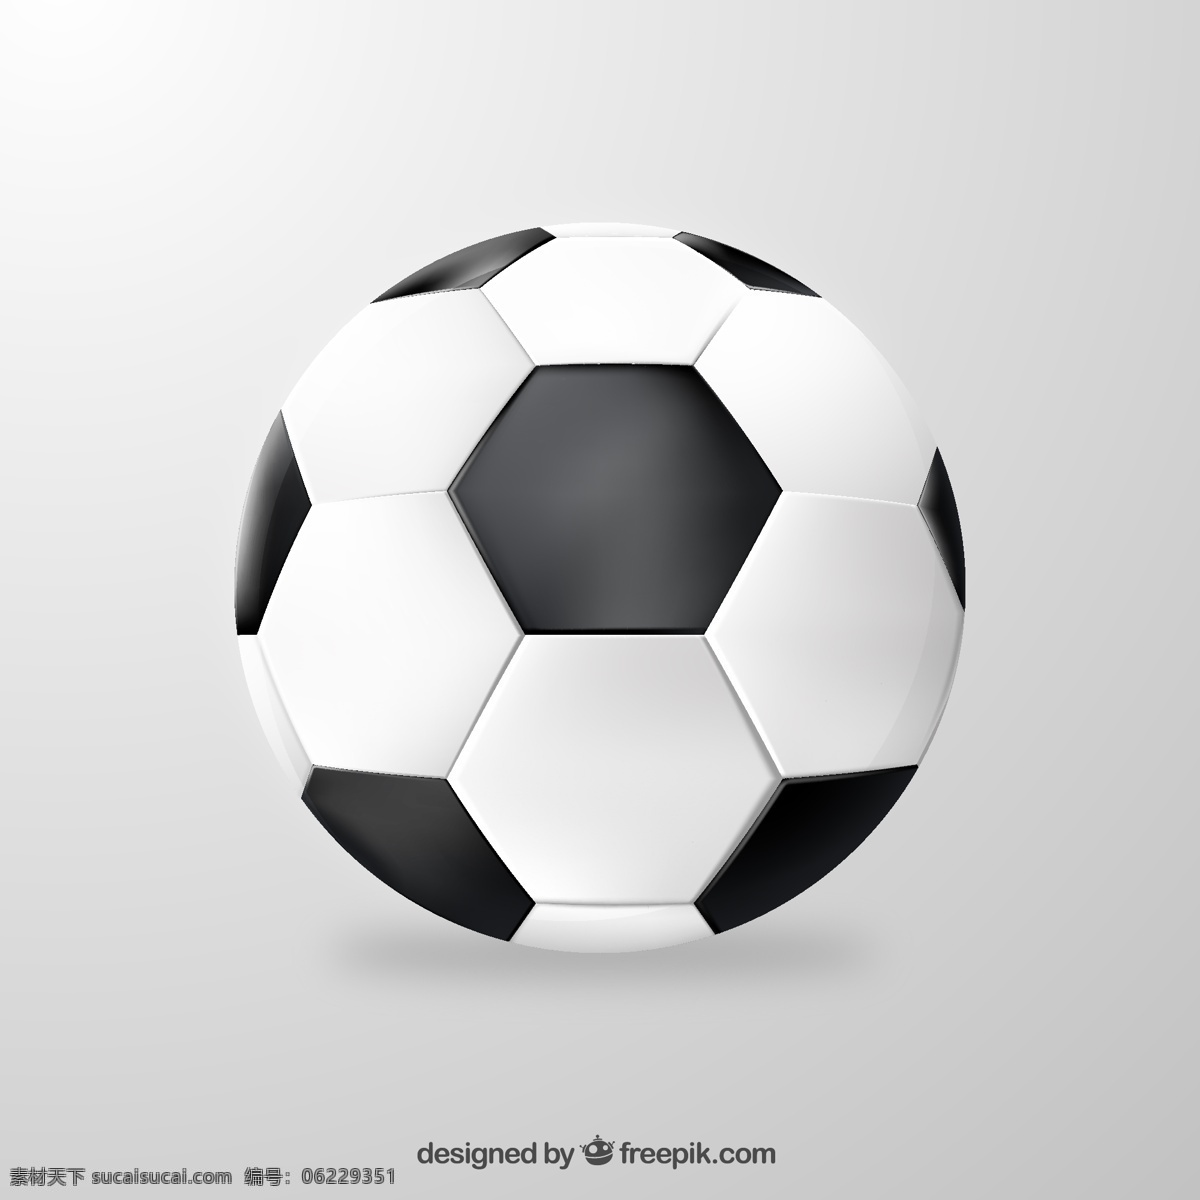 精美足球设计 球具 足球用品 足球 足球运动 白色